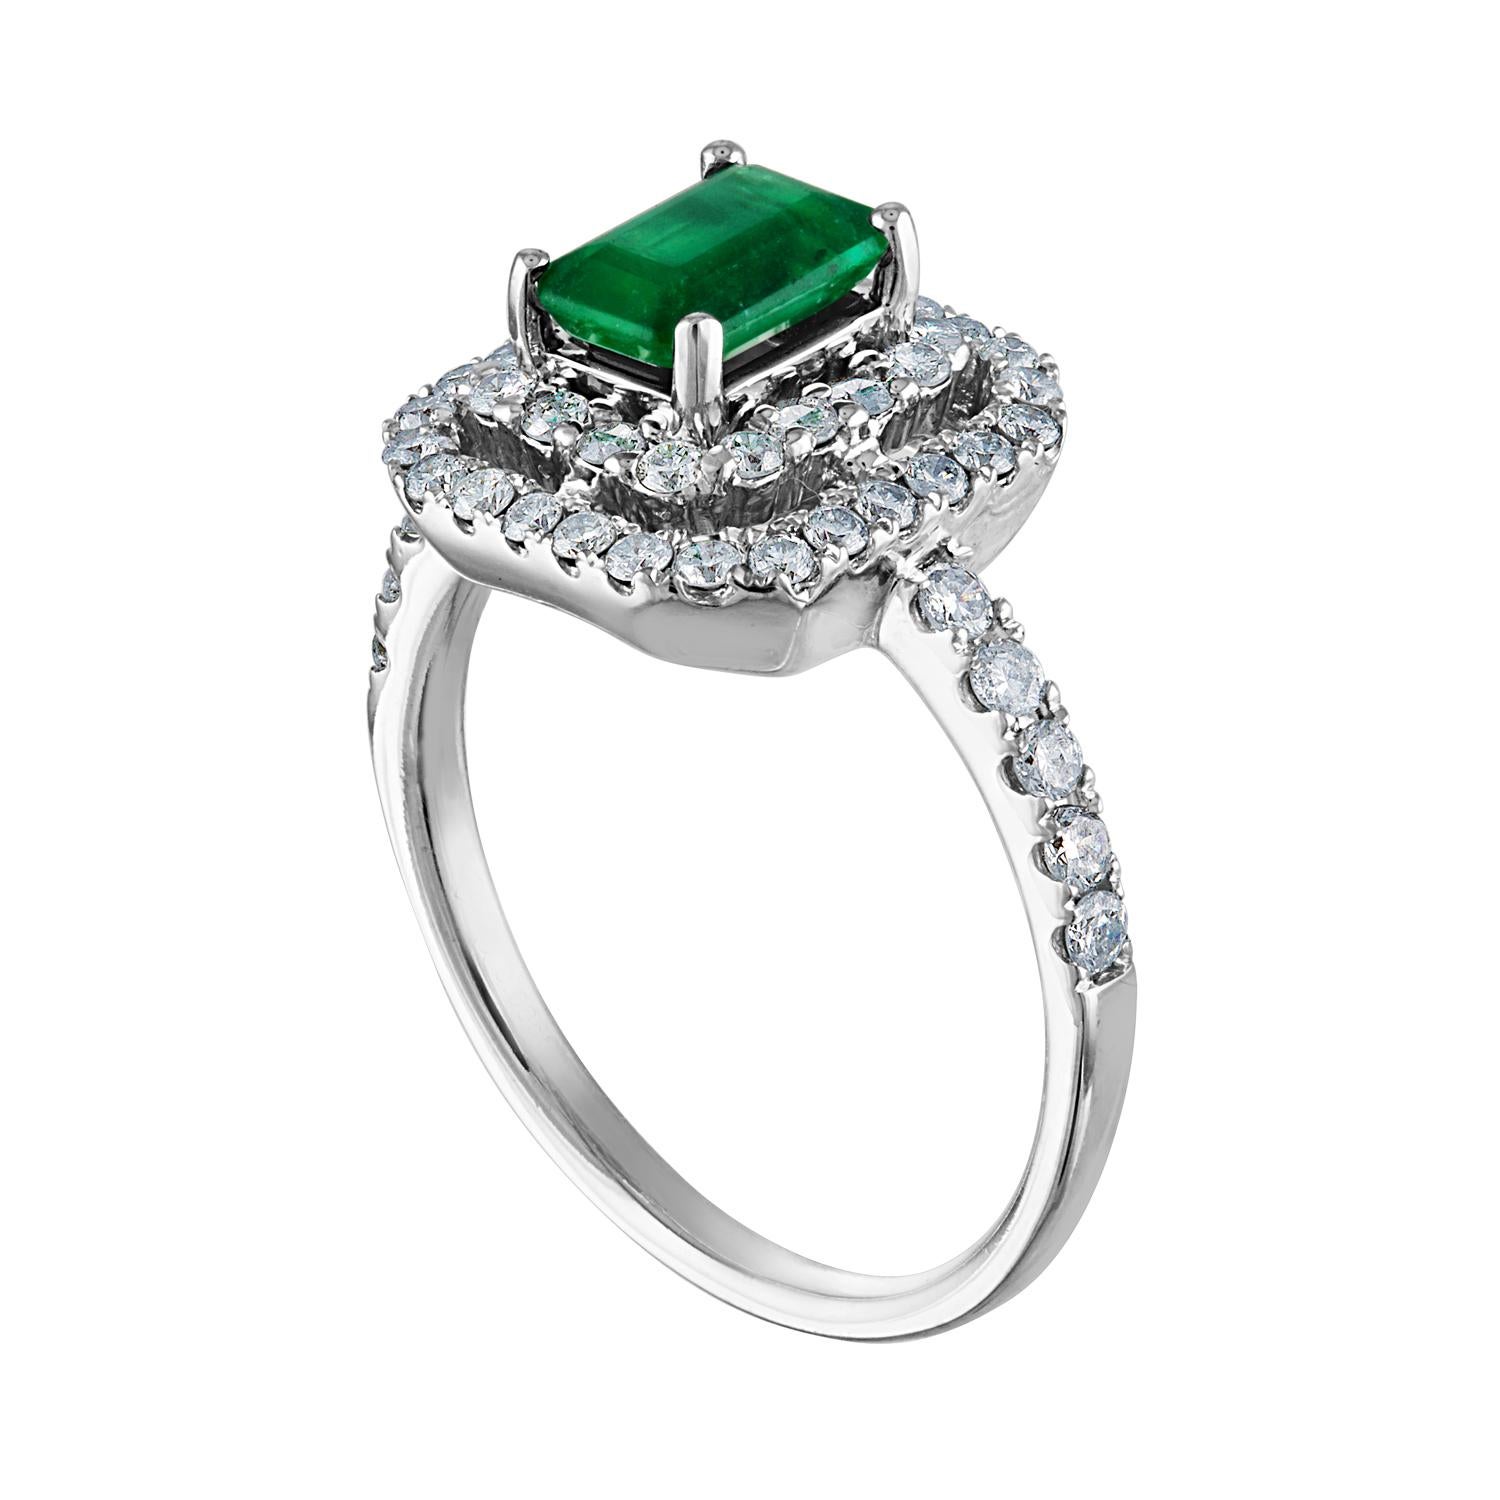 Schöner Double Square Halo Smaragd Ring
Der Ring ist aus 18 Karat Weißgold.
Das Zentrum ist ein wunderschöner Smaragd von 0.80 Karat.
Der Smaragd ist AGL-zertifiziert.
Es sind 0.58 Karat in Diamanten F/G VS/SI
Der Ring ist eine Größe 7.00,